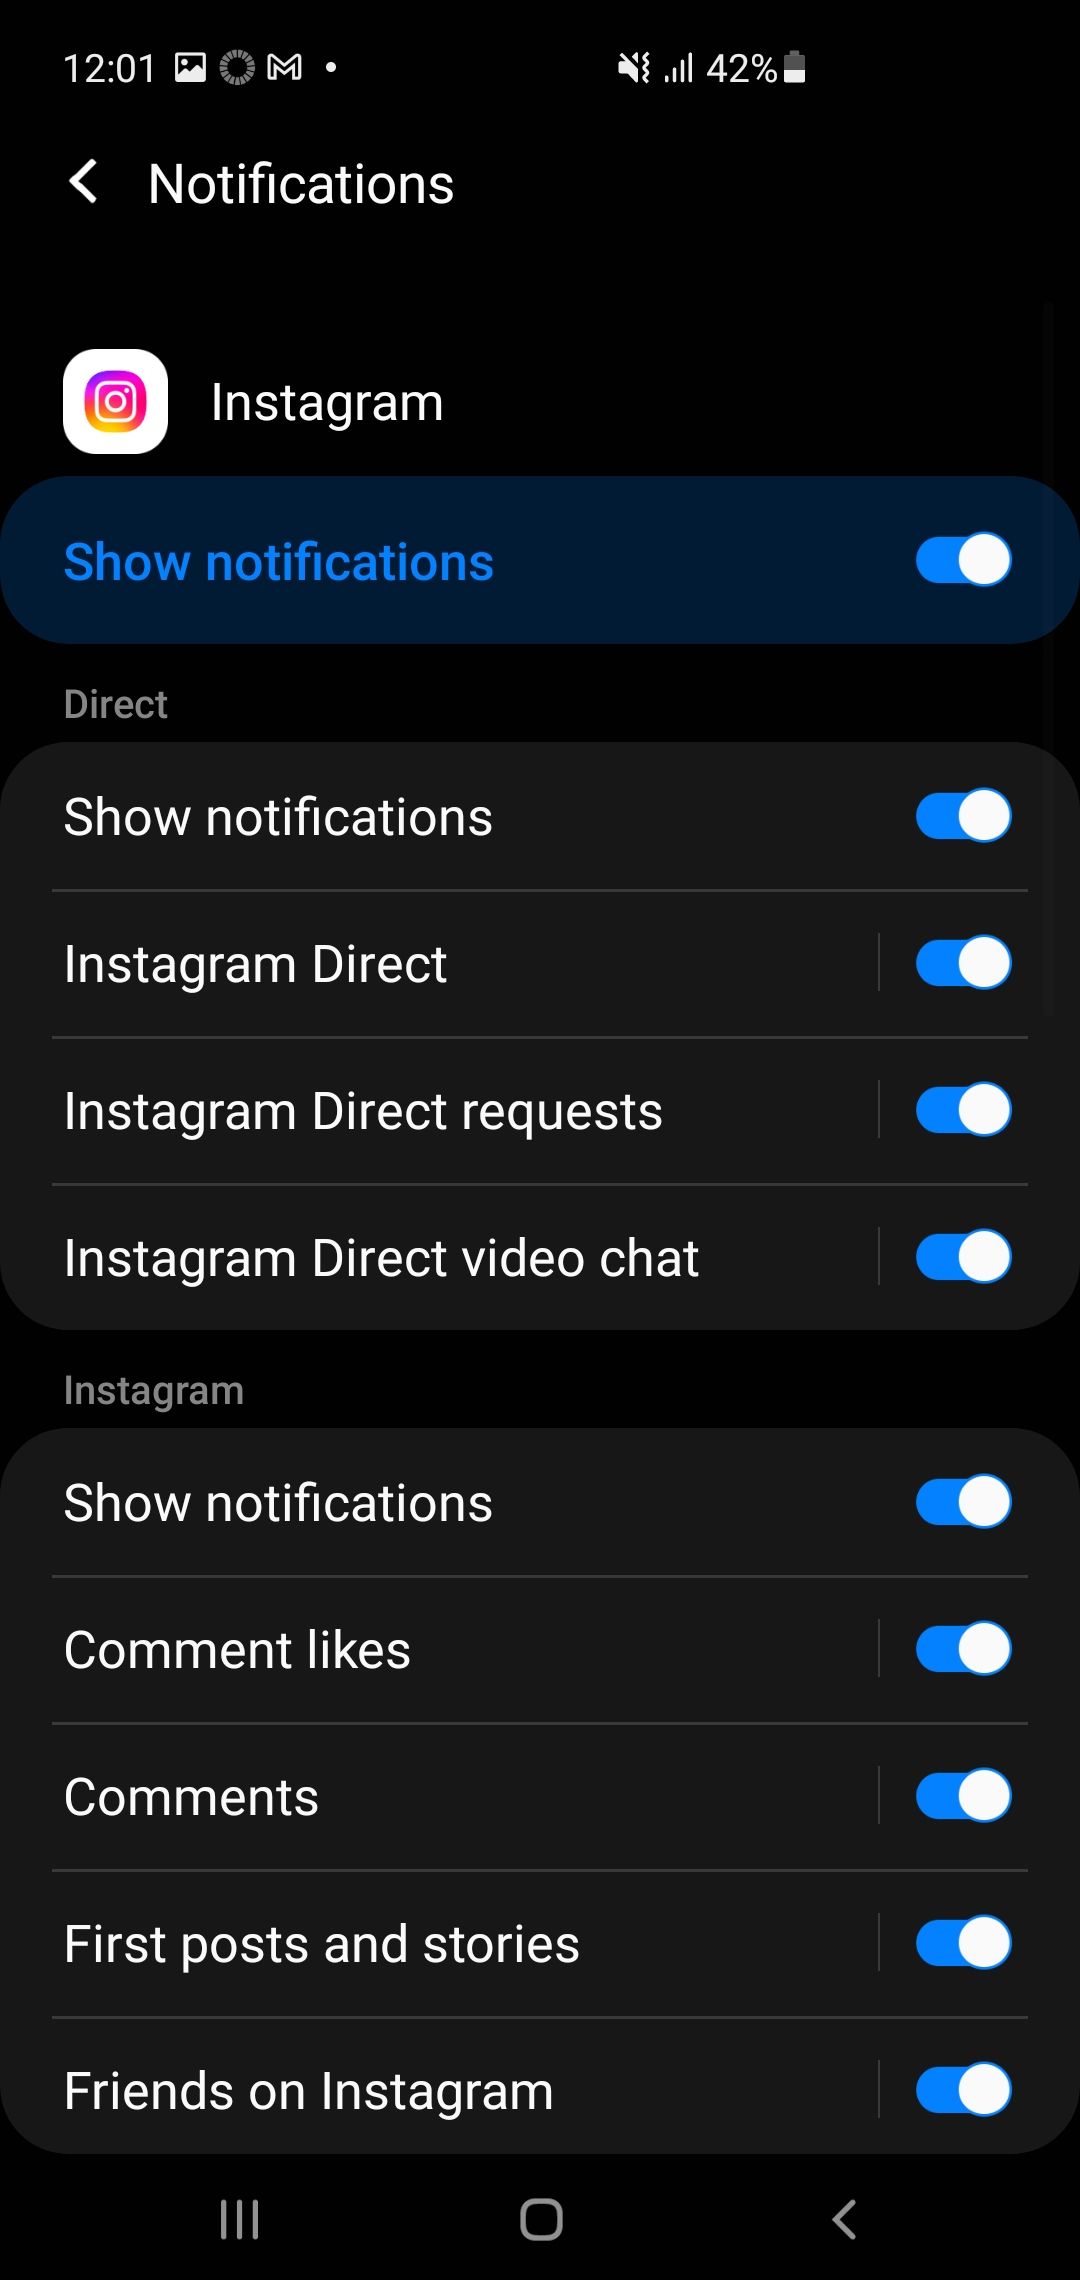 Show notifications of Instagram